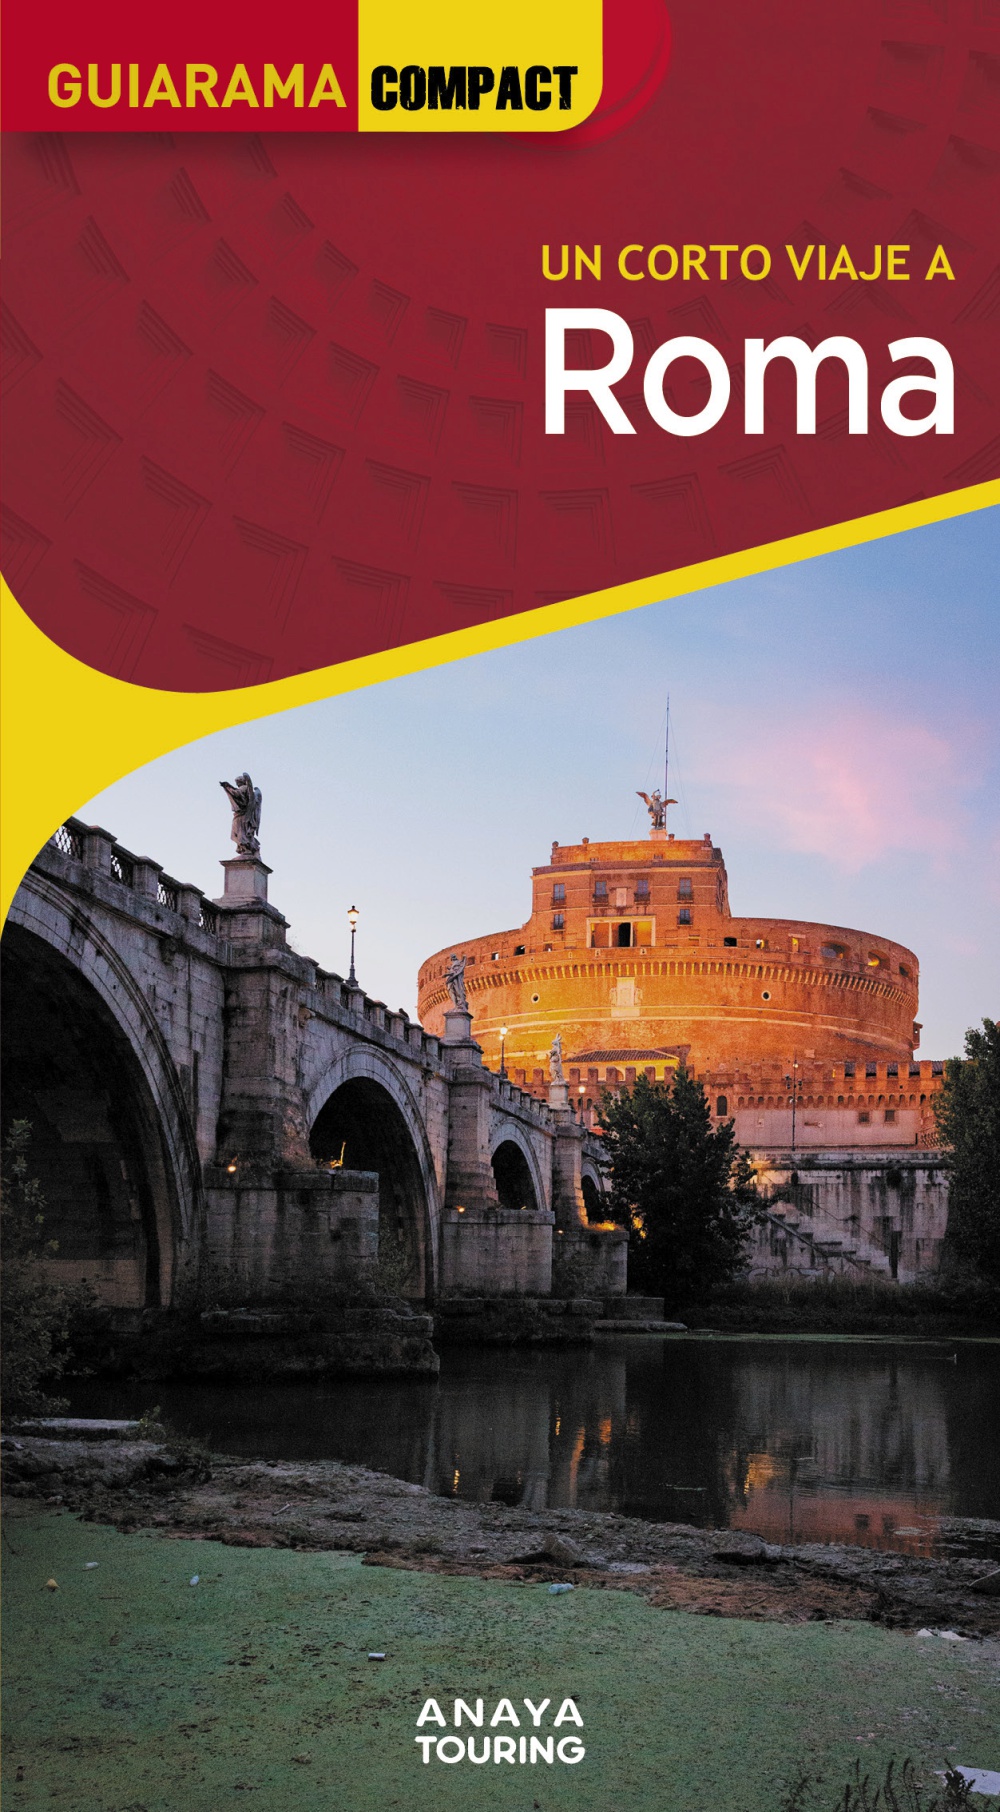 Una guía compacta que concentra lo mejor de Roma